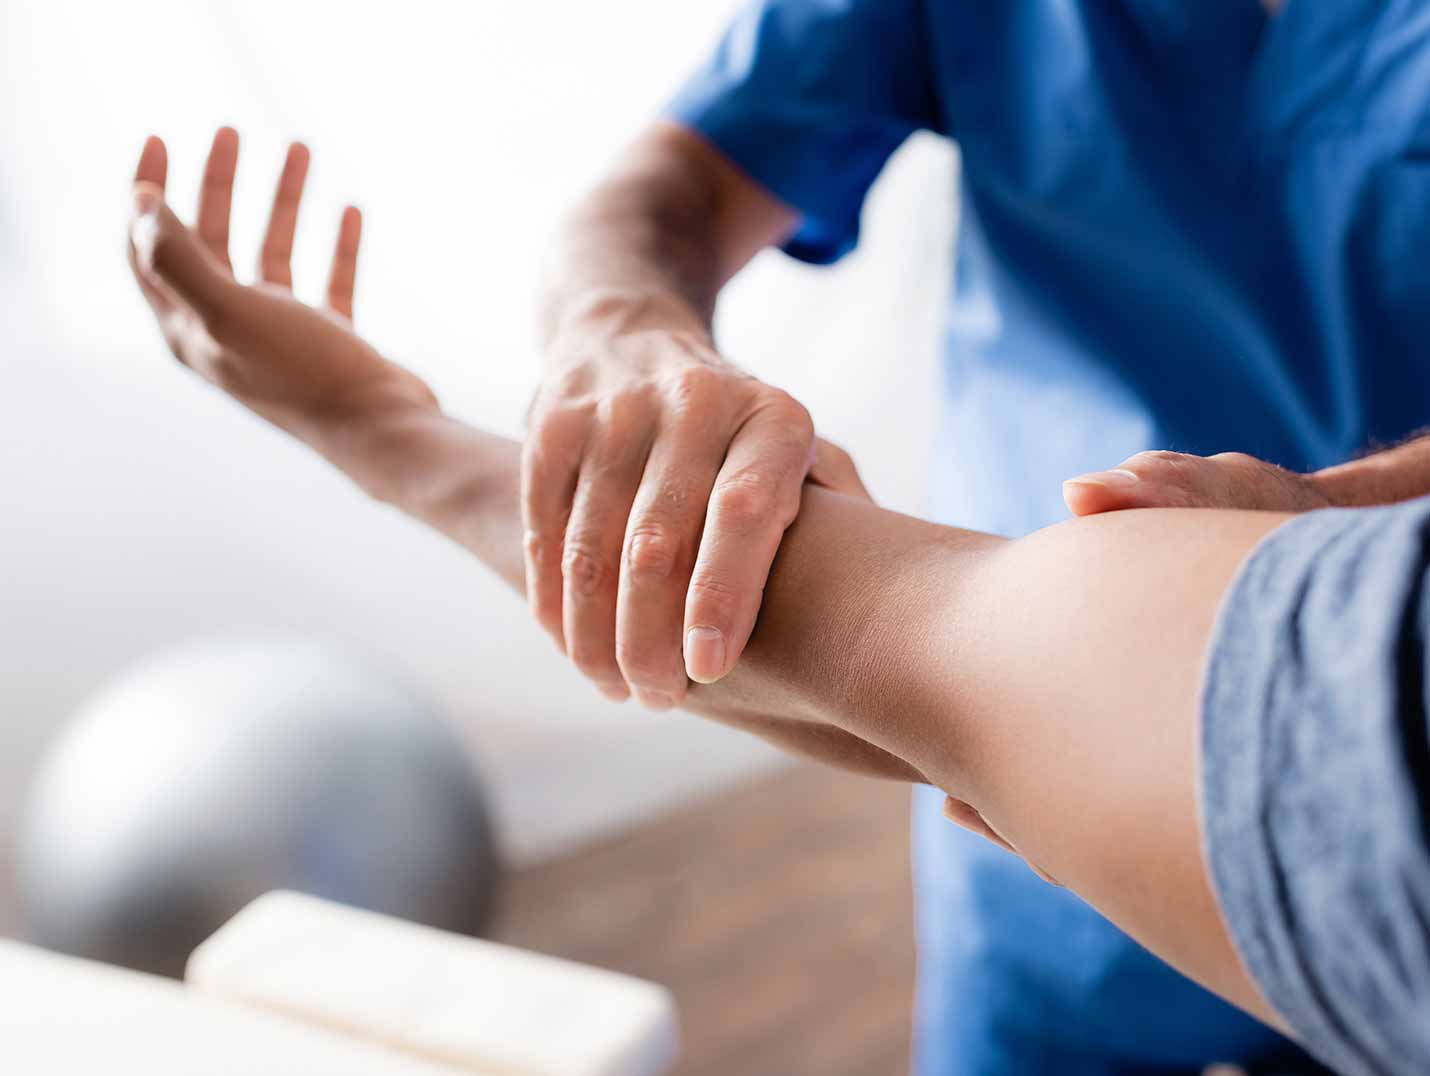 Fisioterapeuta ayudando a un paciente a realizar ejercicios de rehabilitación para su brazo izquierdo